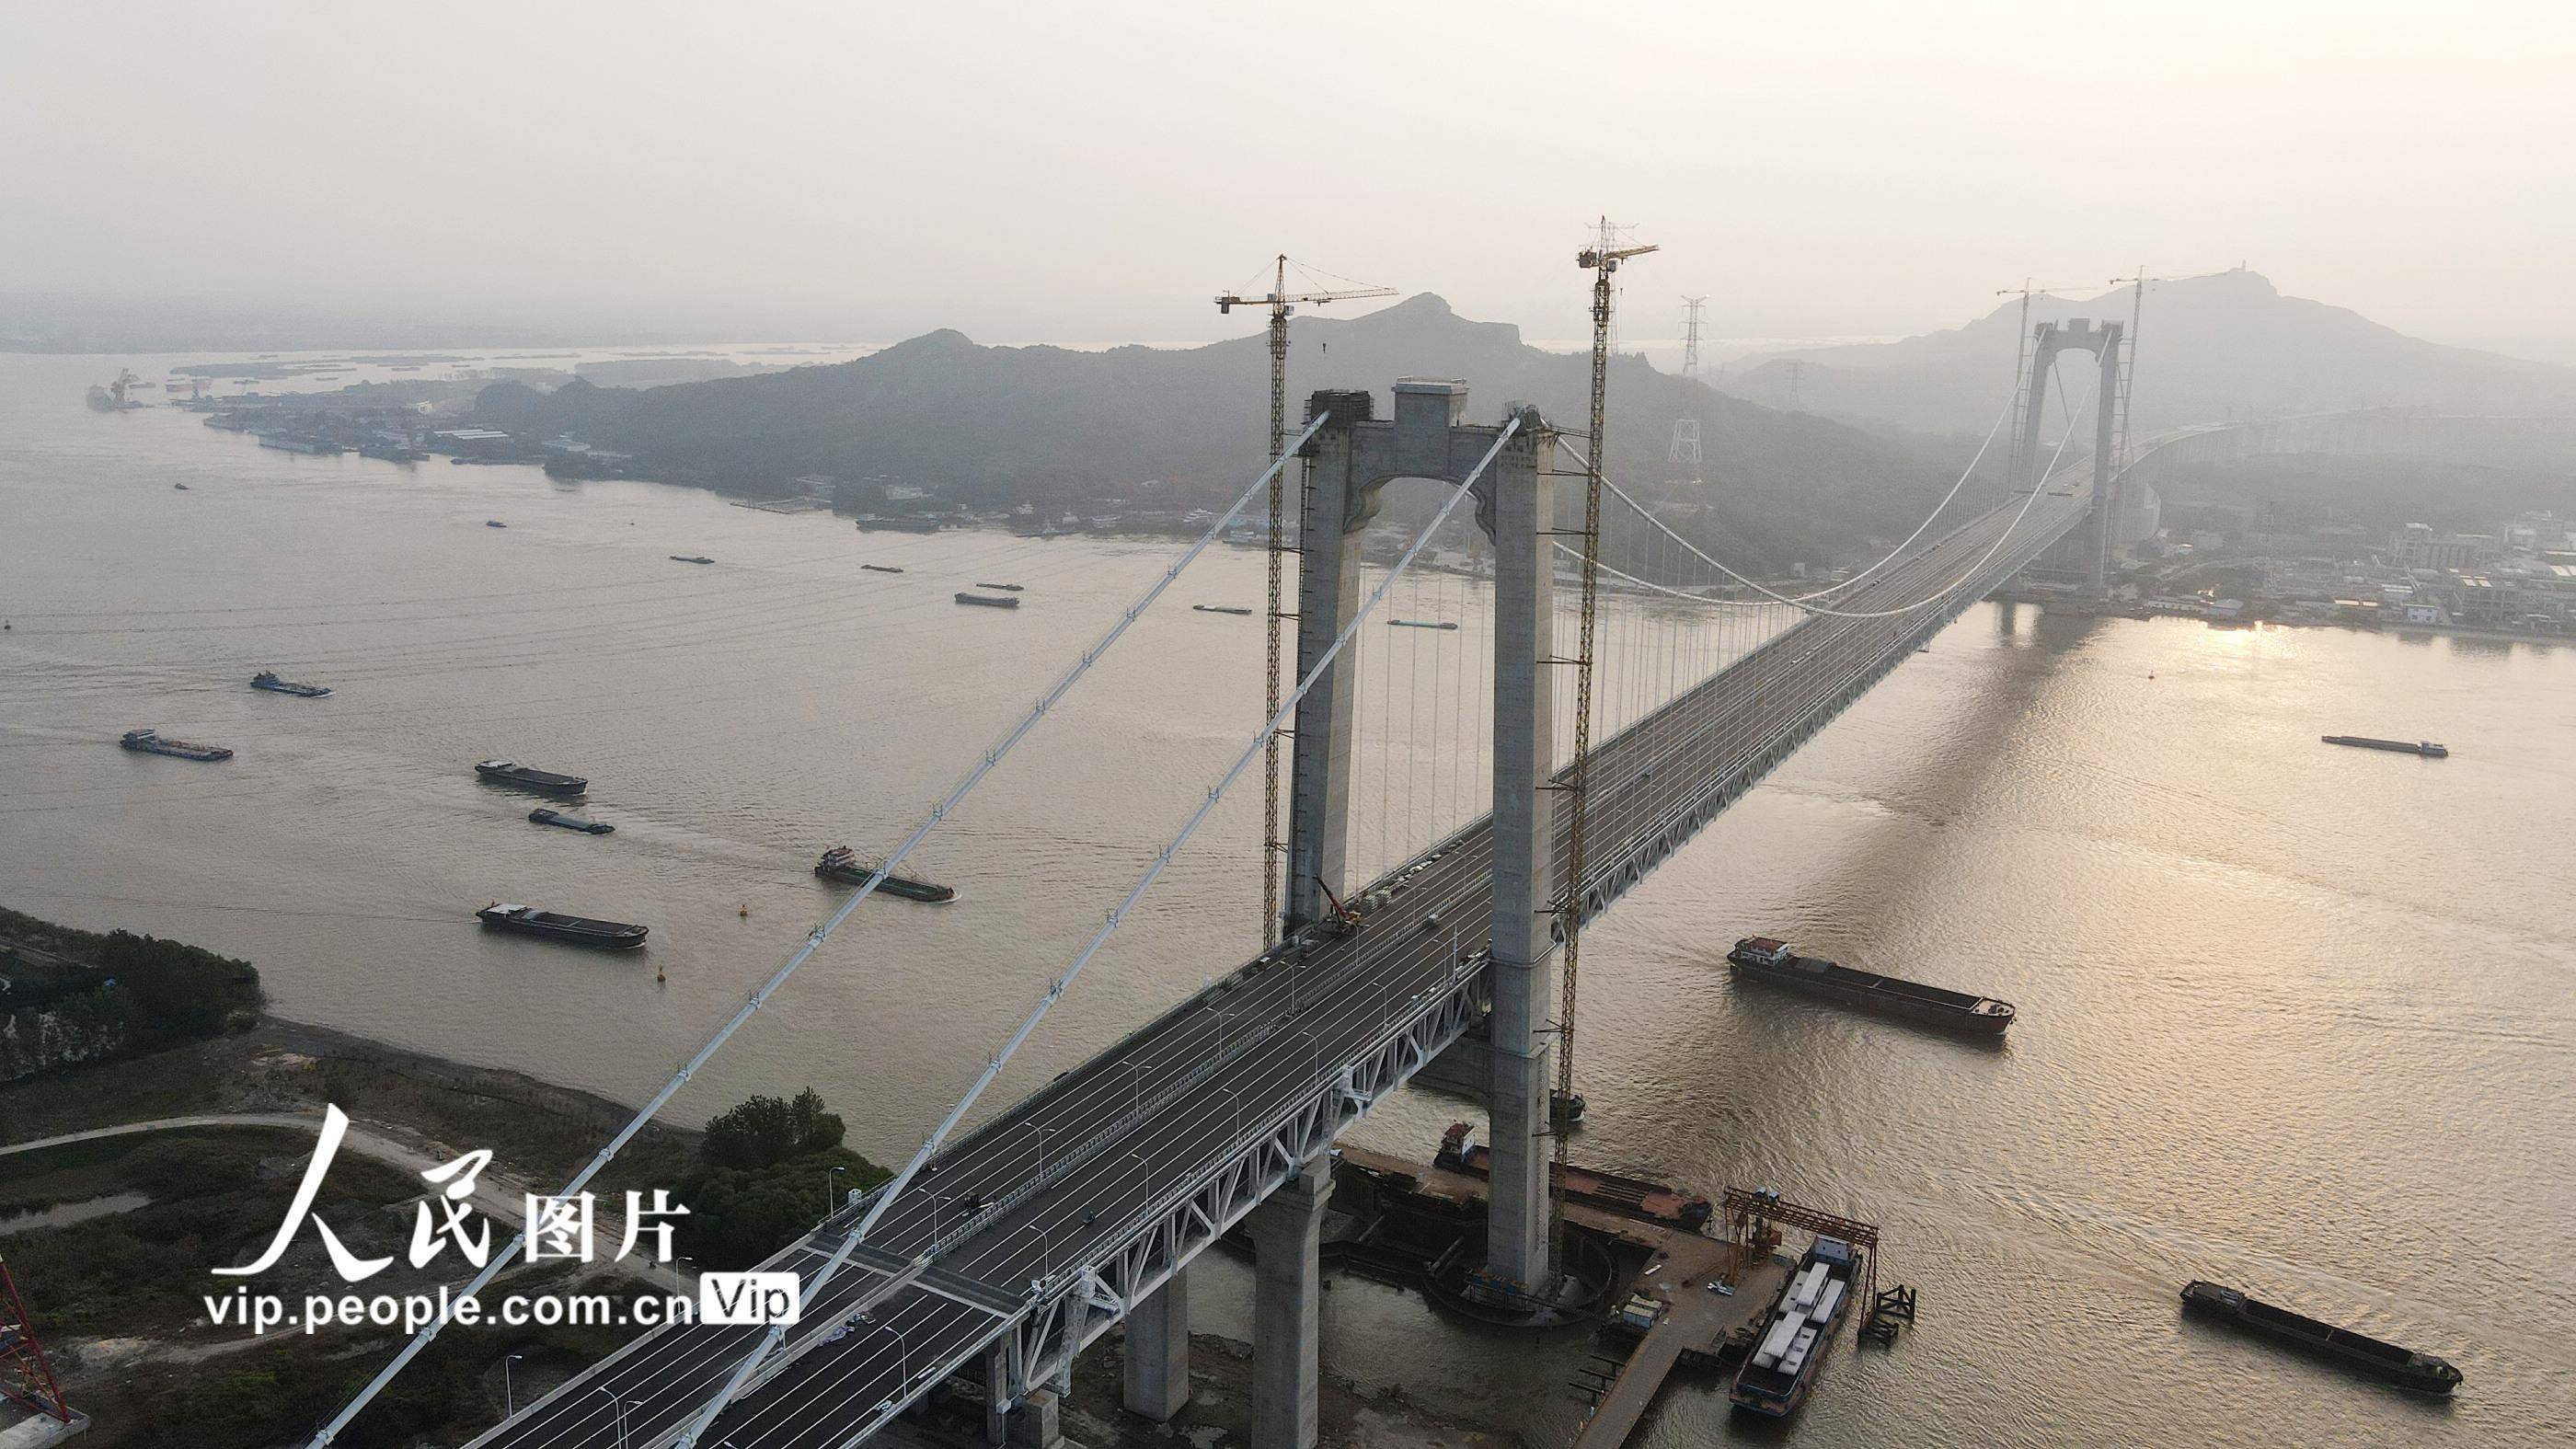 五峰山长江大桥连接江苏扬州市与镇江市,是连云港—镇江高速铁路的过